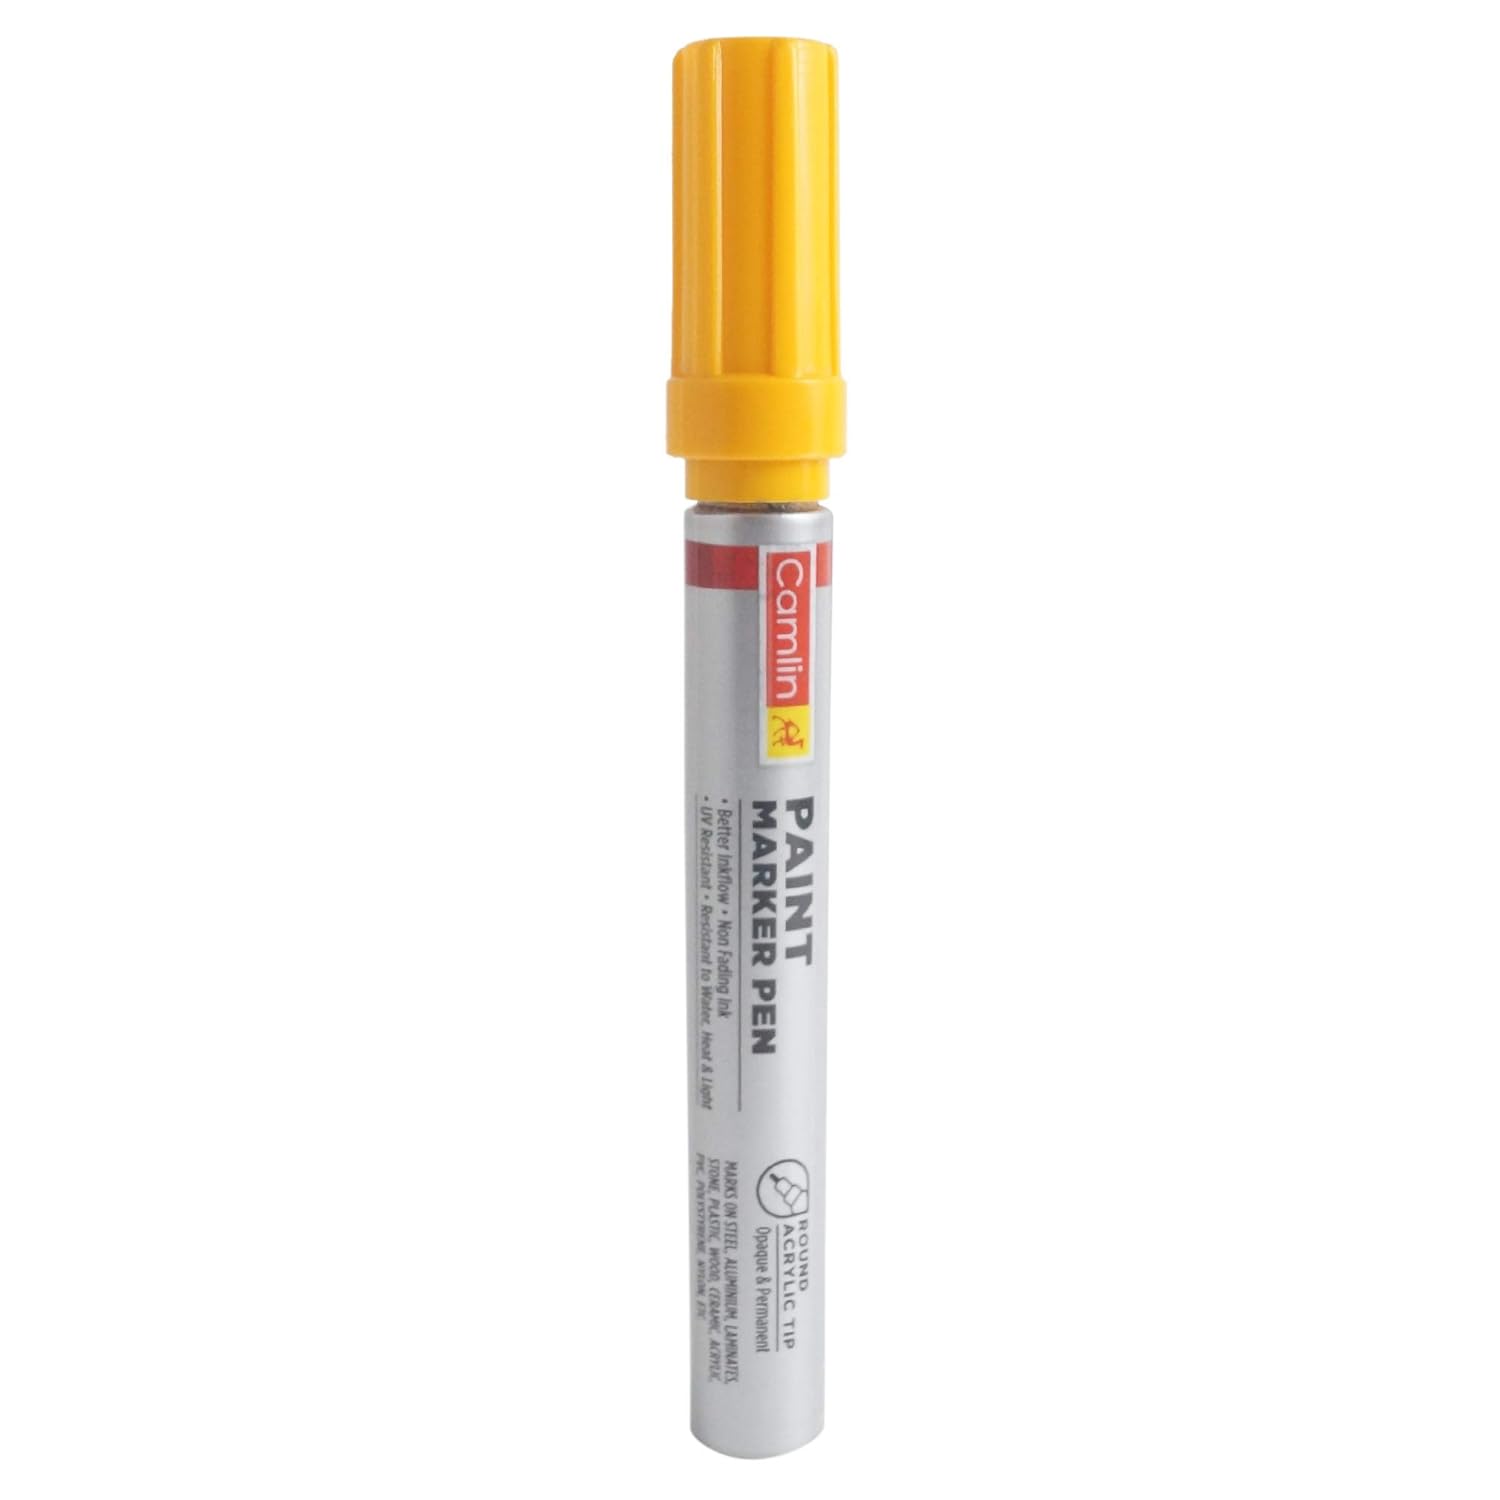 Paint Marker Pen - Yellow Camlin